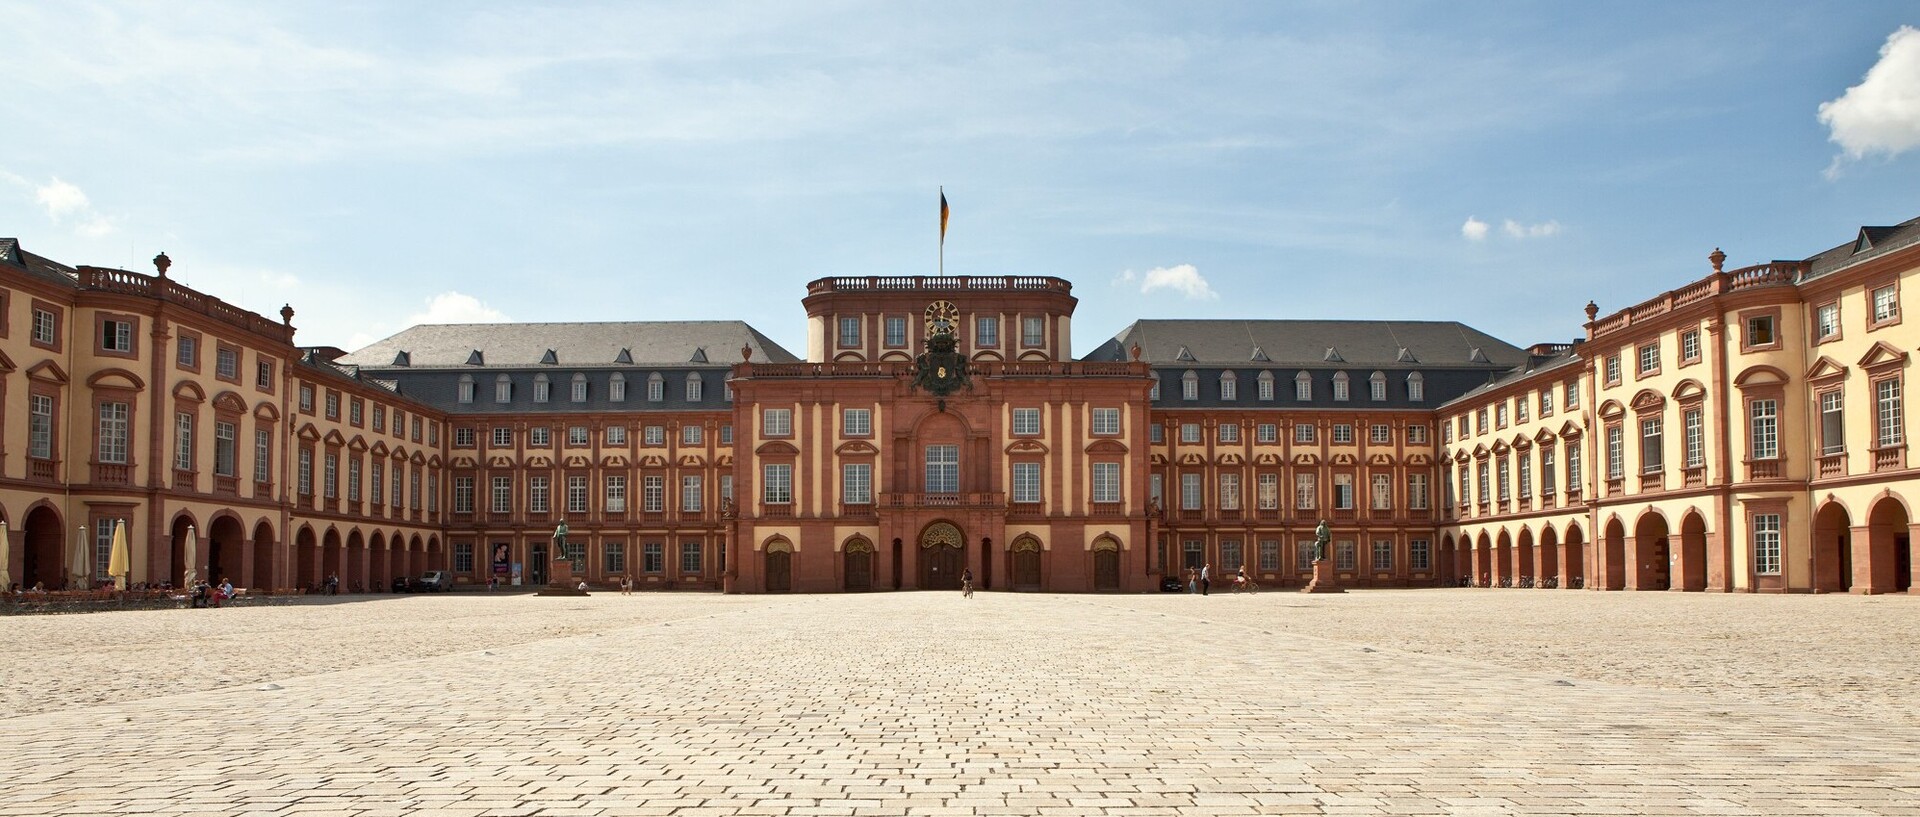 Das Mannheimer Barockschloss und der Ehrenhof bei blauem Himmel.